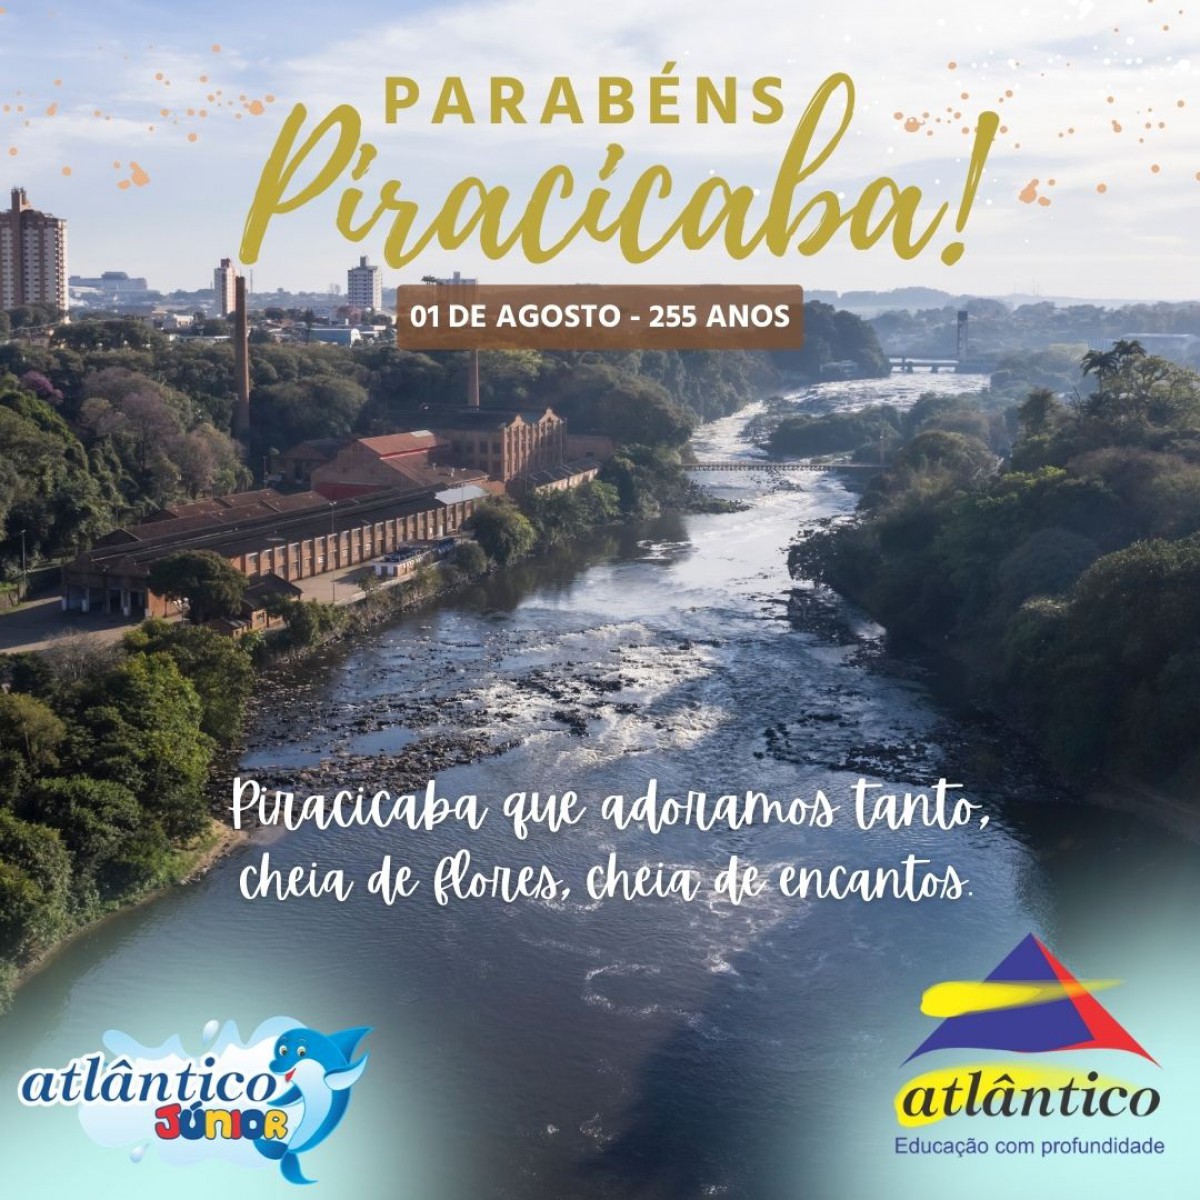 Parabéns Piracicaba!